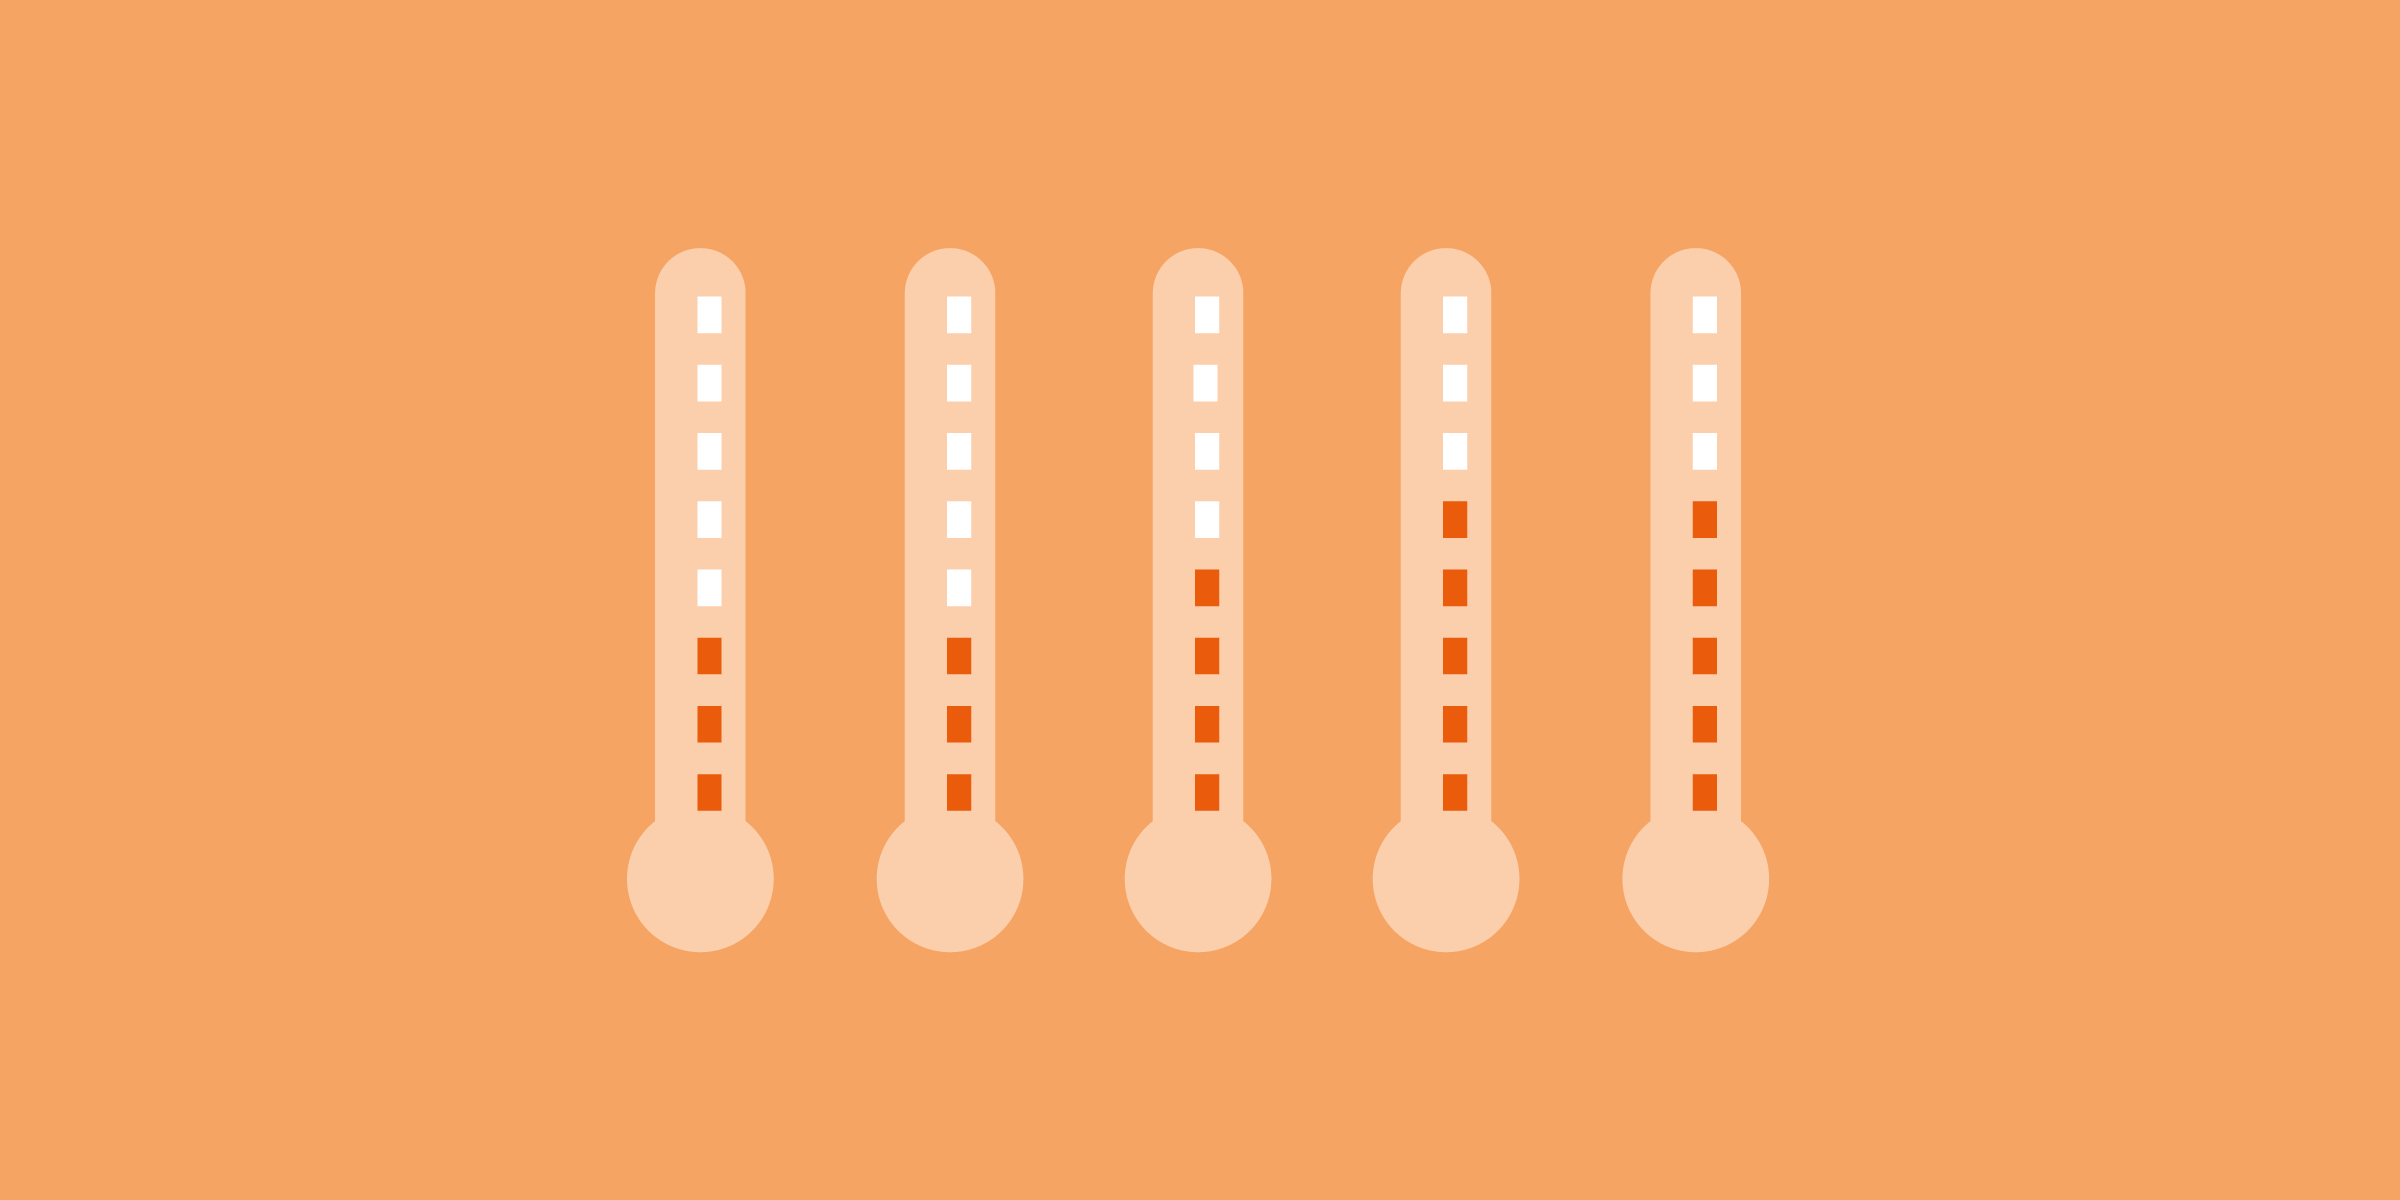 Termômetros com diferentes temperaturas, em fundo laranja